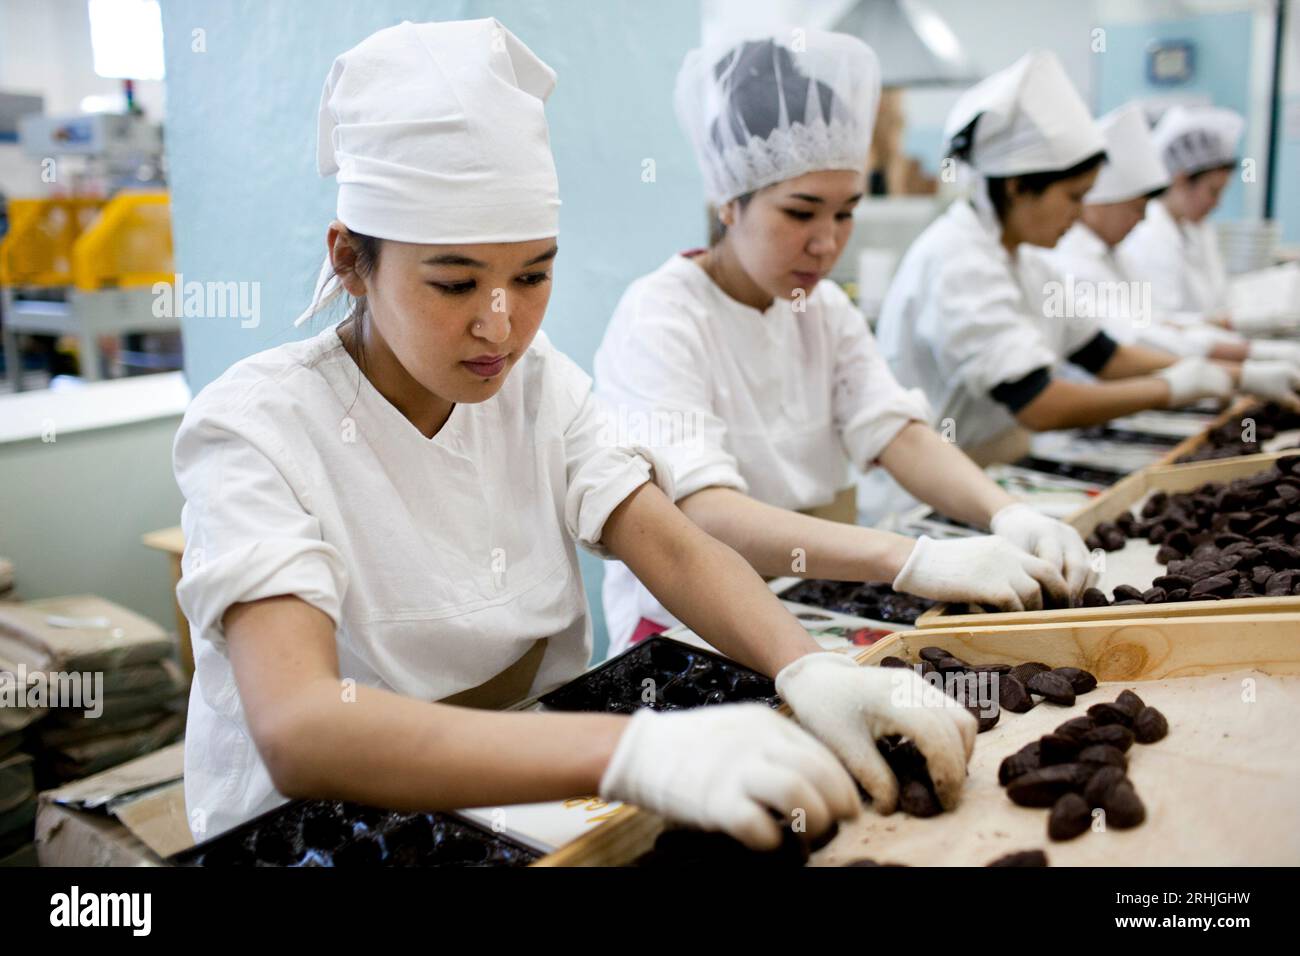 Les femmes travaillent sur la ligne d'emballage de la chocolaterie Rakhat à Almaty, la plus grande ville du Kazakhstan. Banque D'Images